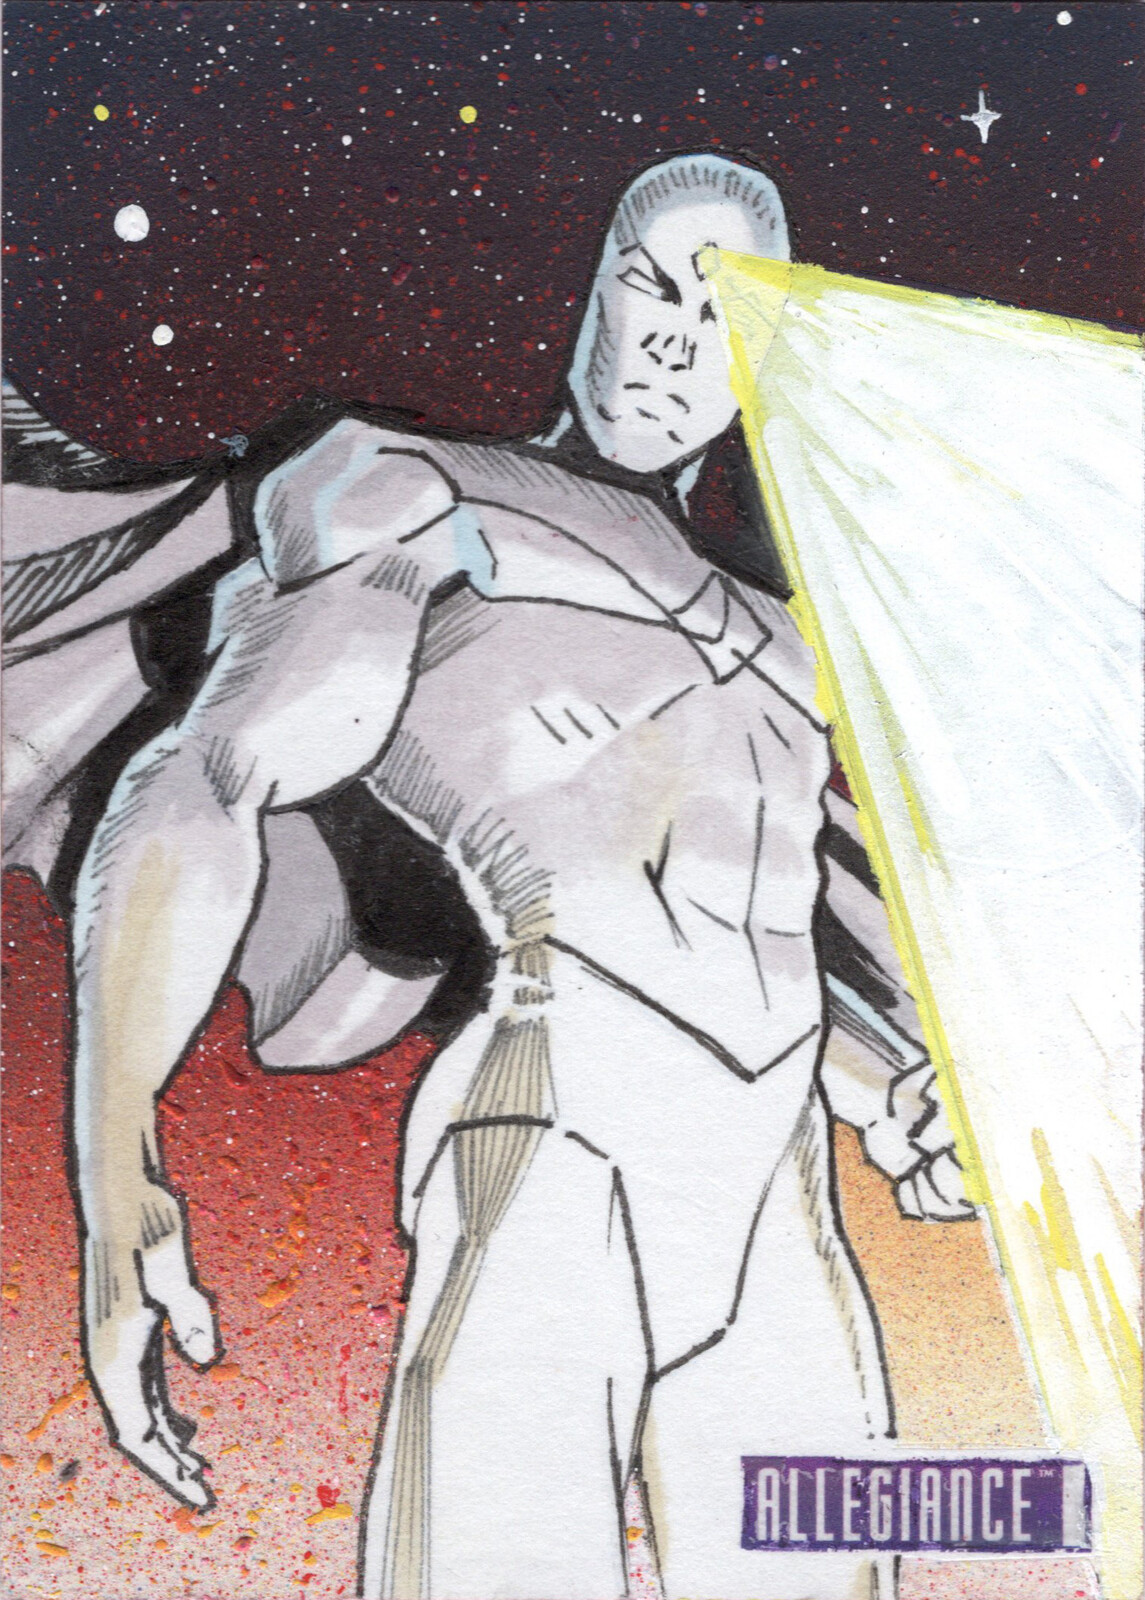 Vision - Upper Deck Infinity Trilogy Marvel Allegiance Sketchcard